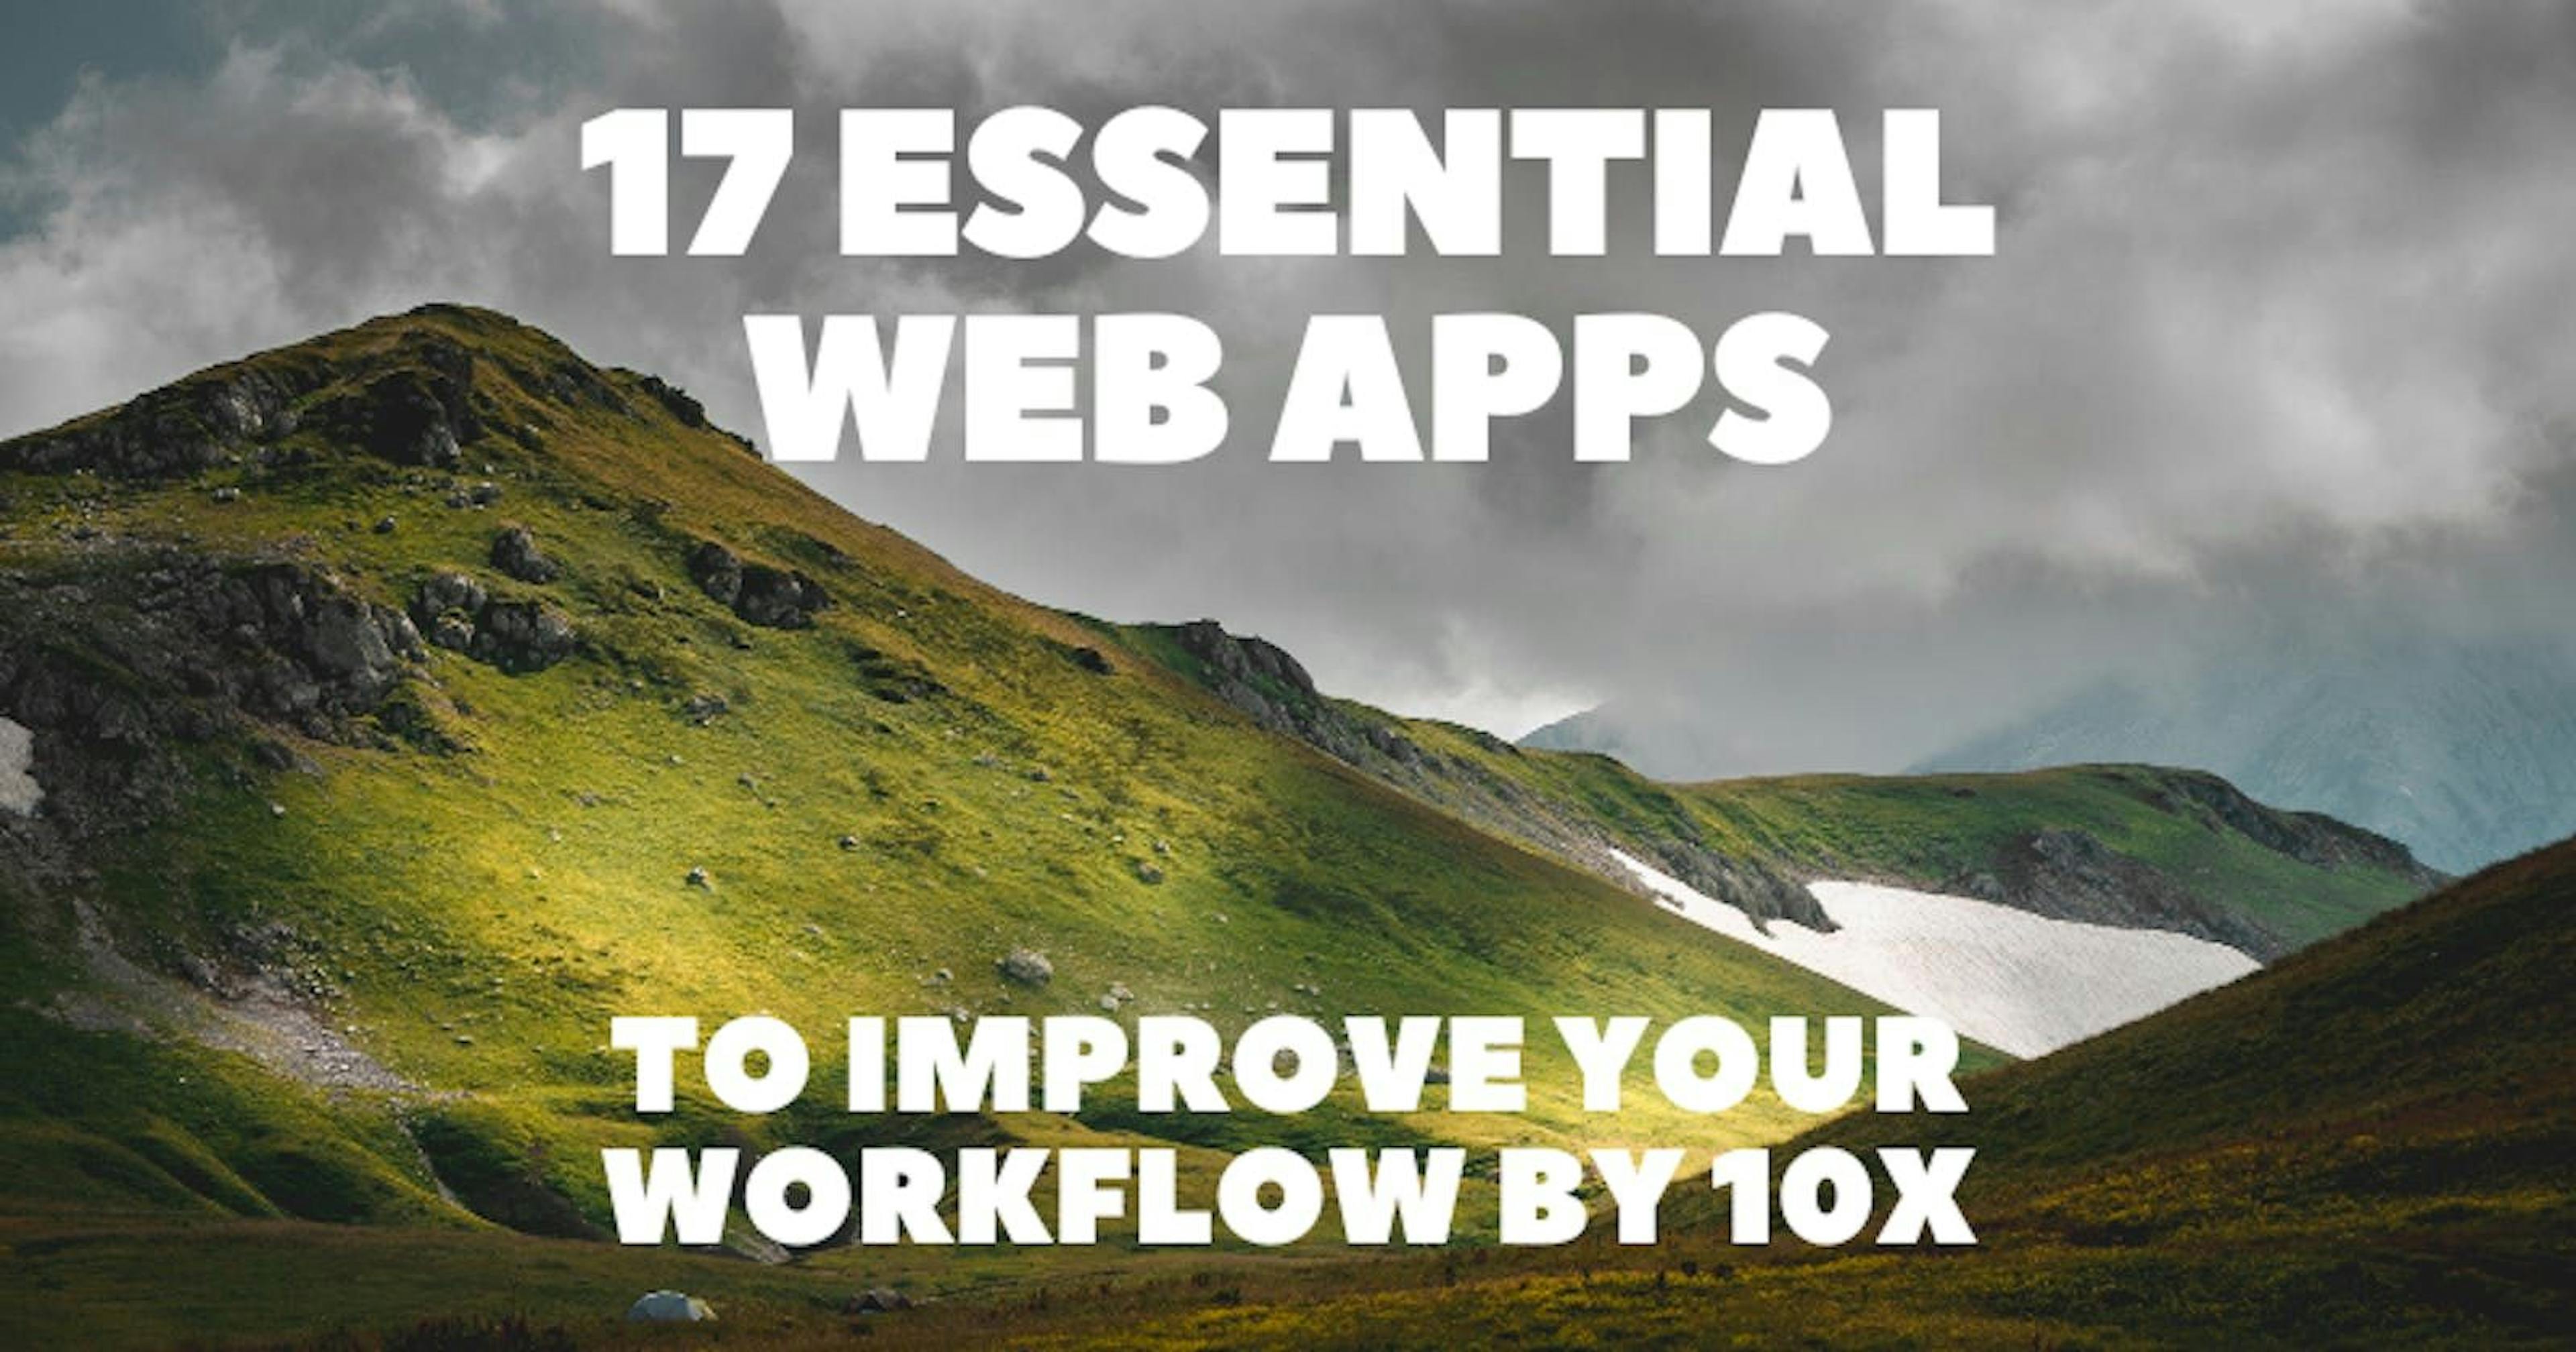 featured image - Comment améliorer votre flux de travail par 10 : 17 applications essentielles